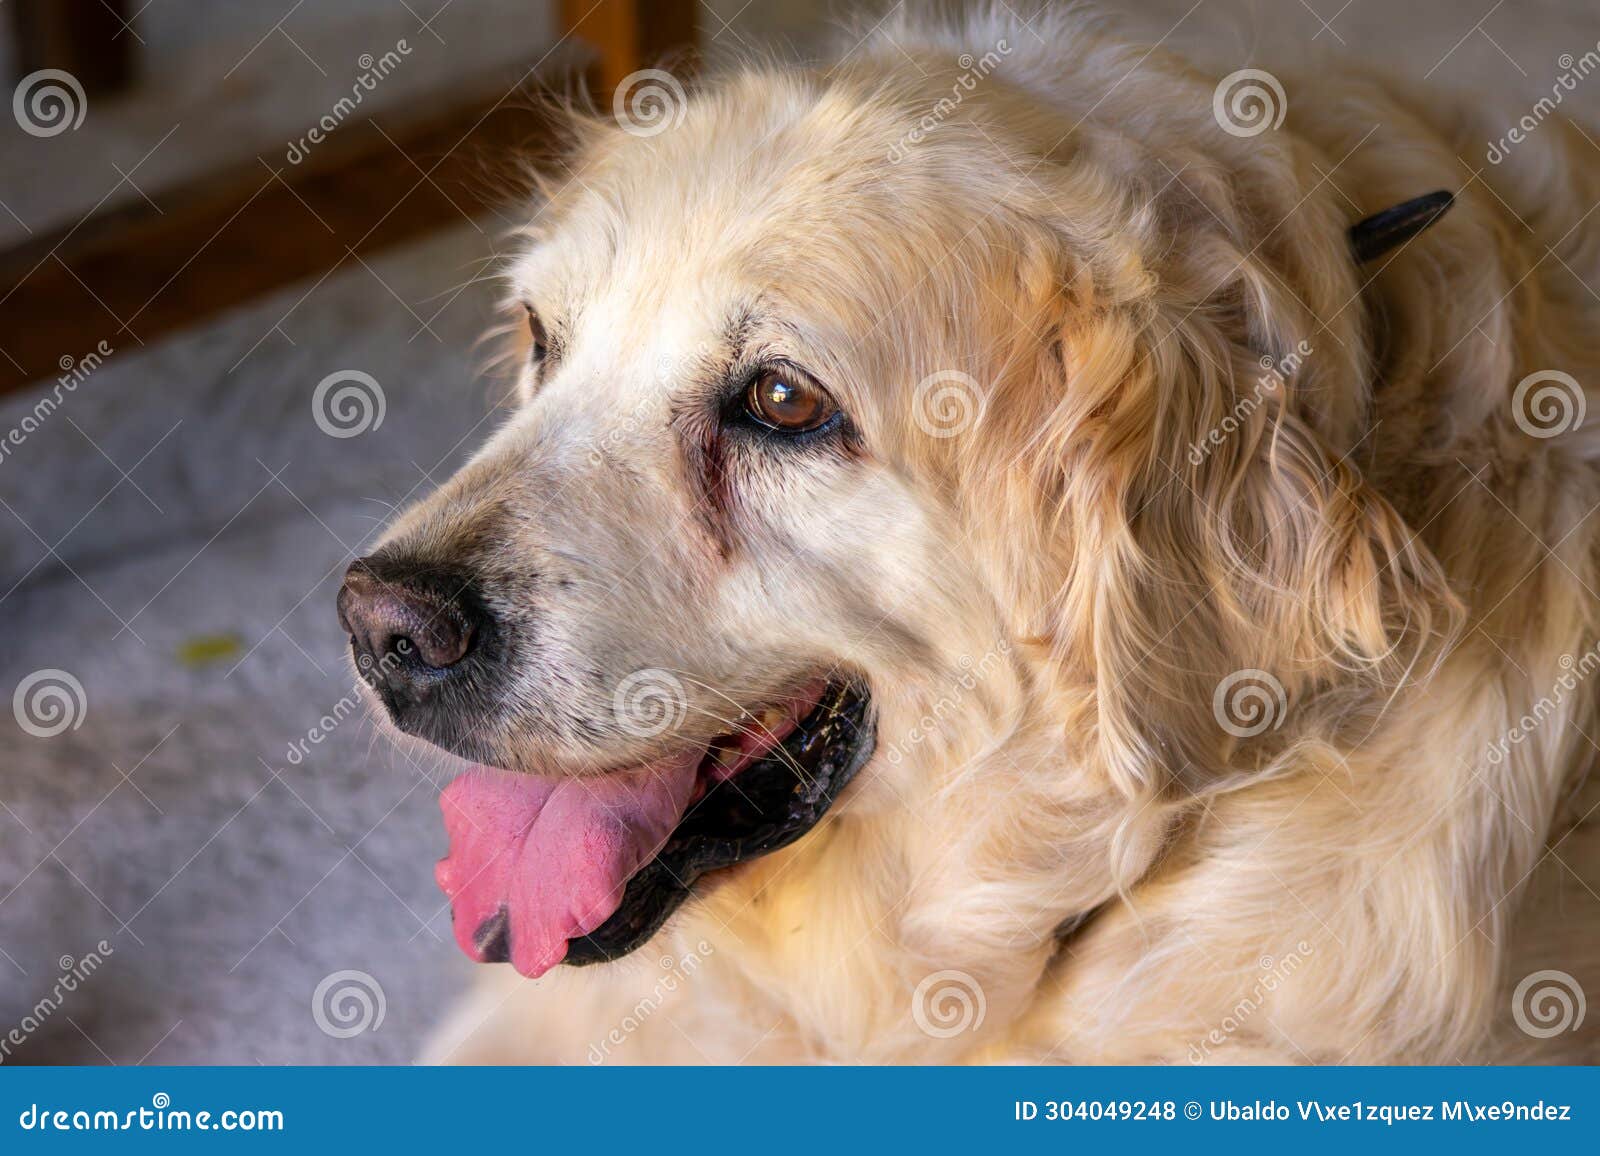 un perro golden retriever con la lengua fuera